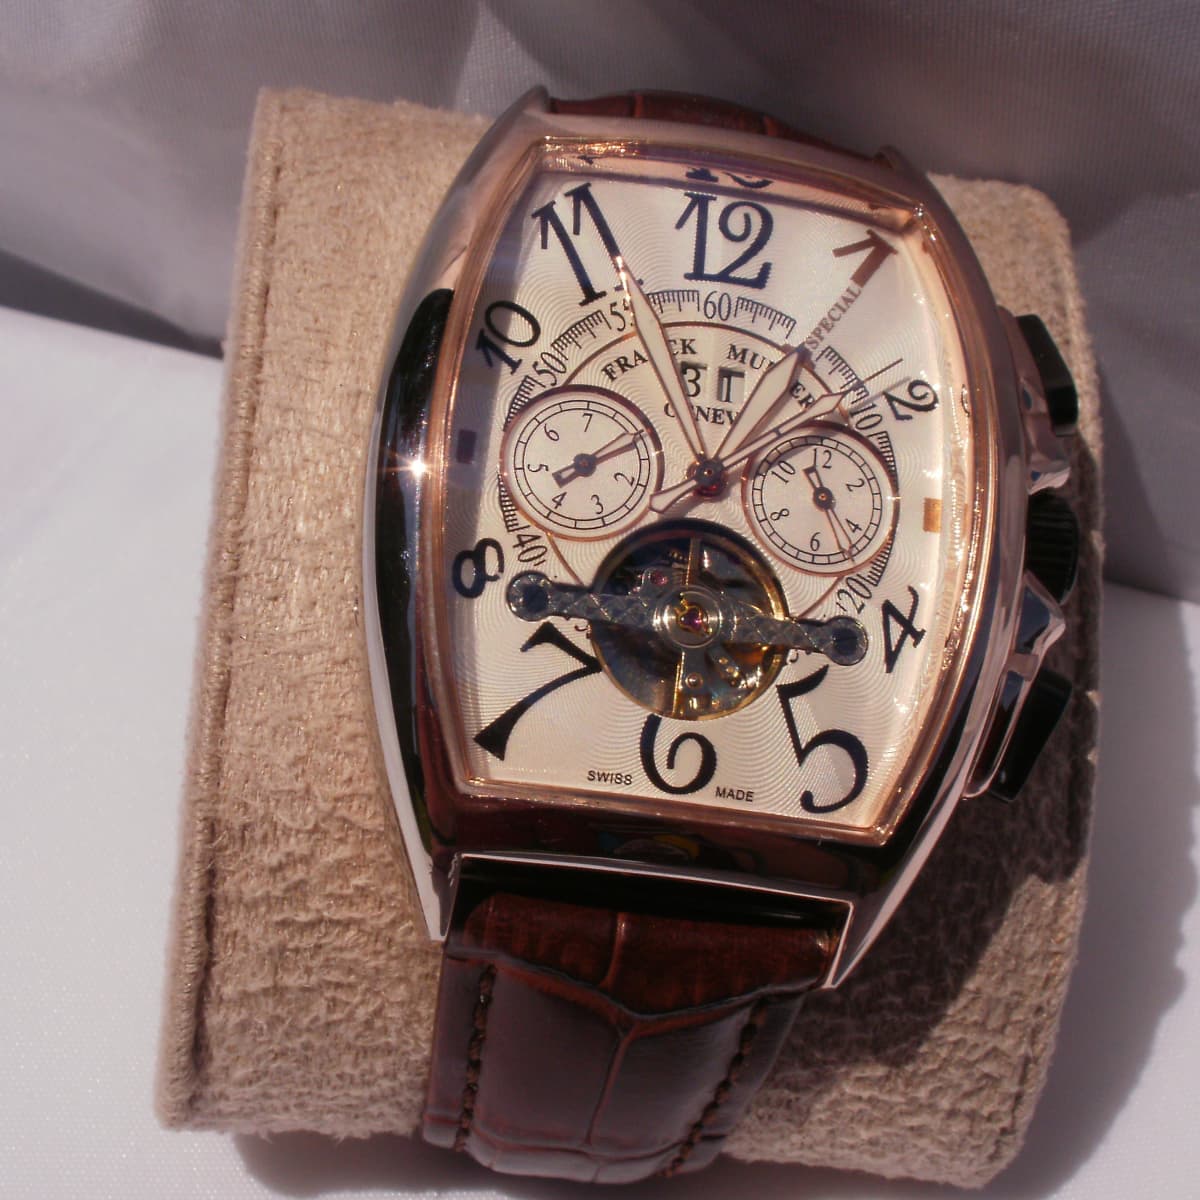 Фрэнк мюллер. Часы Franck Muller 344 1932. Часы Franck Muller 1932. Фрэнк Мюллер Женева часы. Часы Франк Мюллер Geneve.